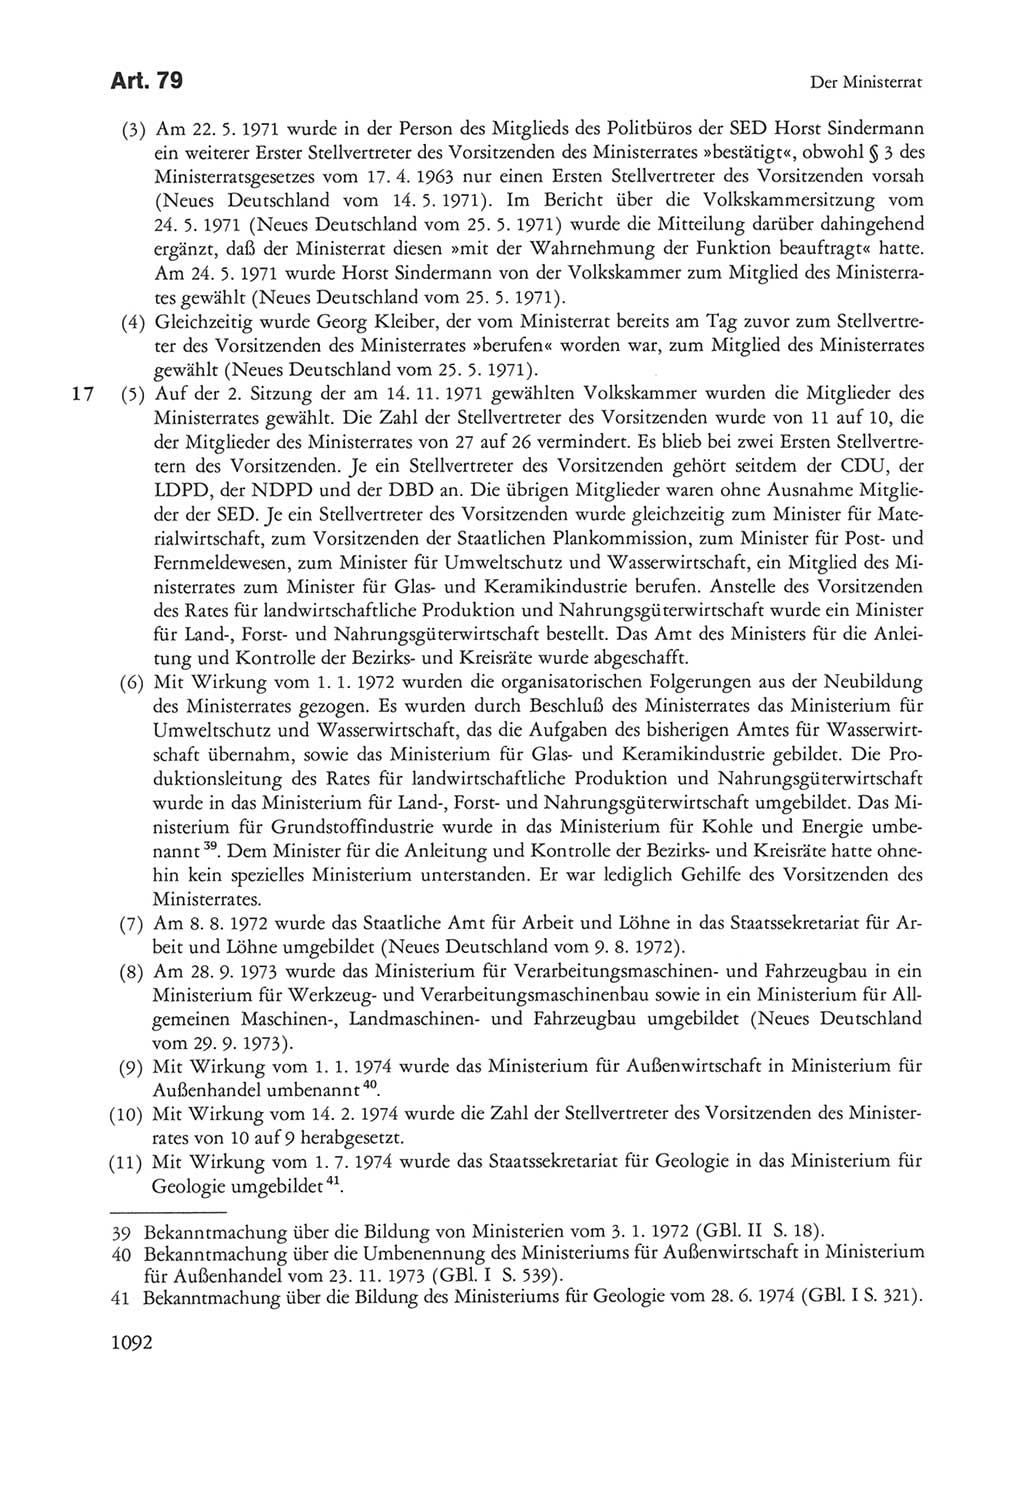 Die sozialistische Verfassung der Deutschen Demokratischen Republik (DDR), Kommentar 1982, Seite 1092 (Soz. Verf. DDR Komm. 1982, S. 1092)